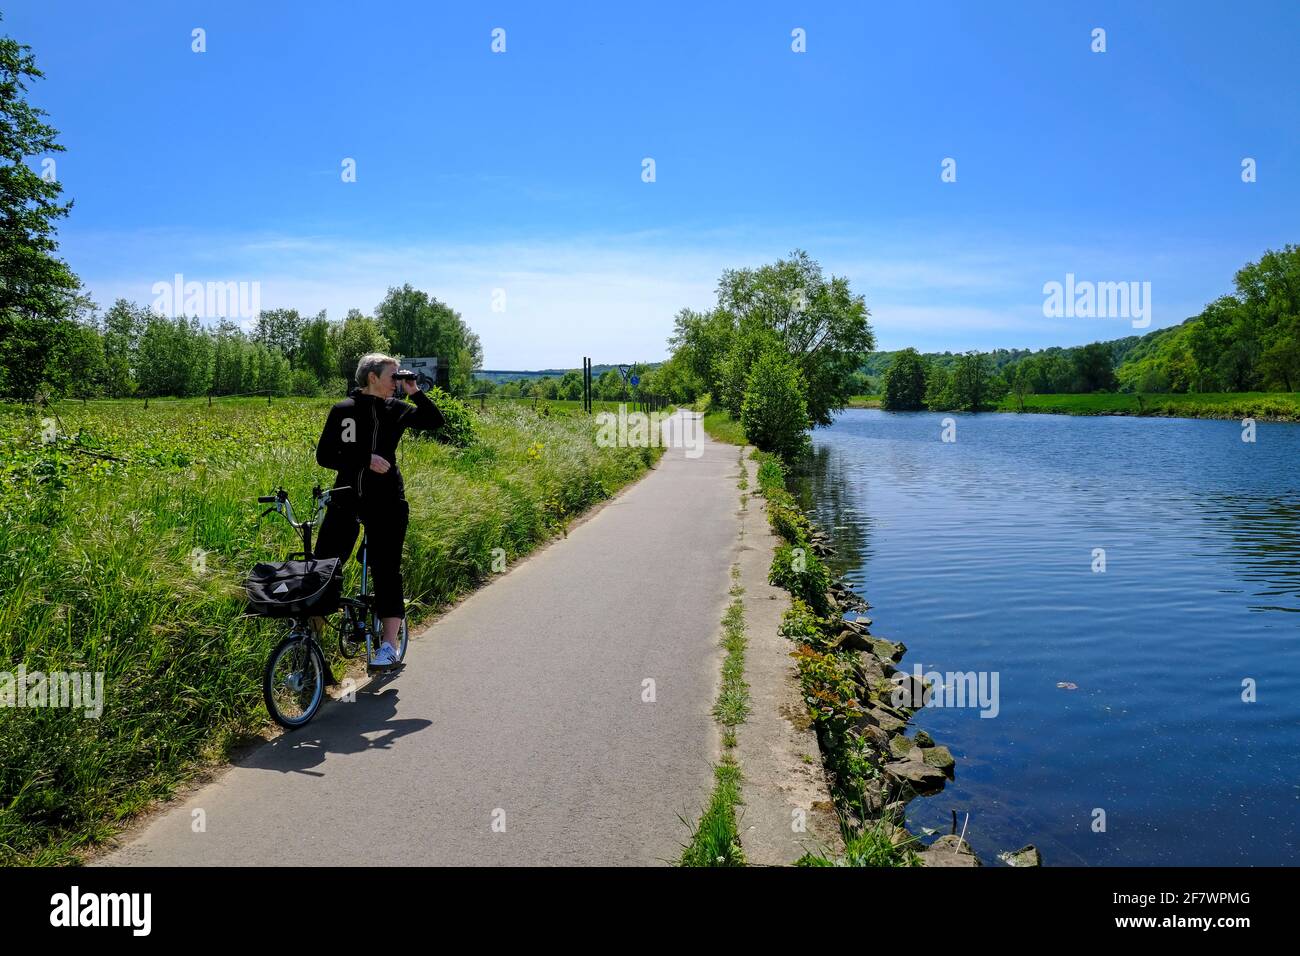 05.05.2020, Mülheim, Ruhrgebiet, Nordrhein-Westfalen, Deutschland - eine Radfahrerin auf einem Brompton-Faltrad beobachtet etwas durch ihr Fernglas an Stock Photo